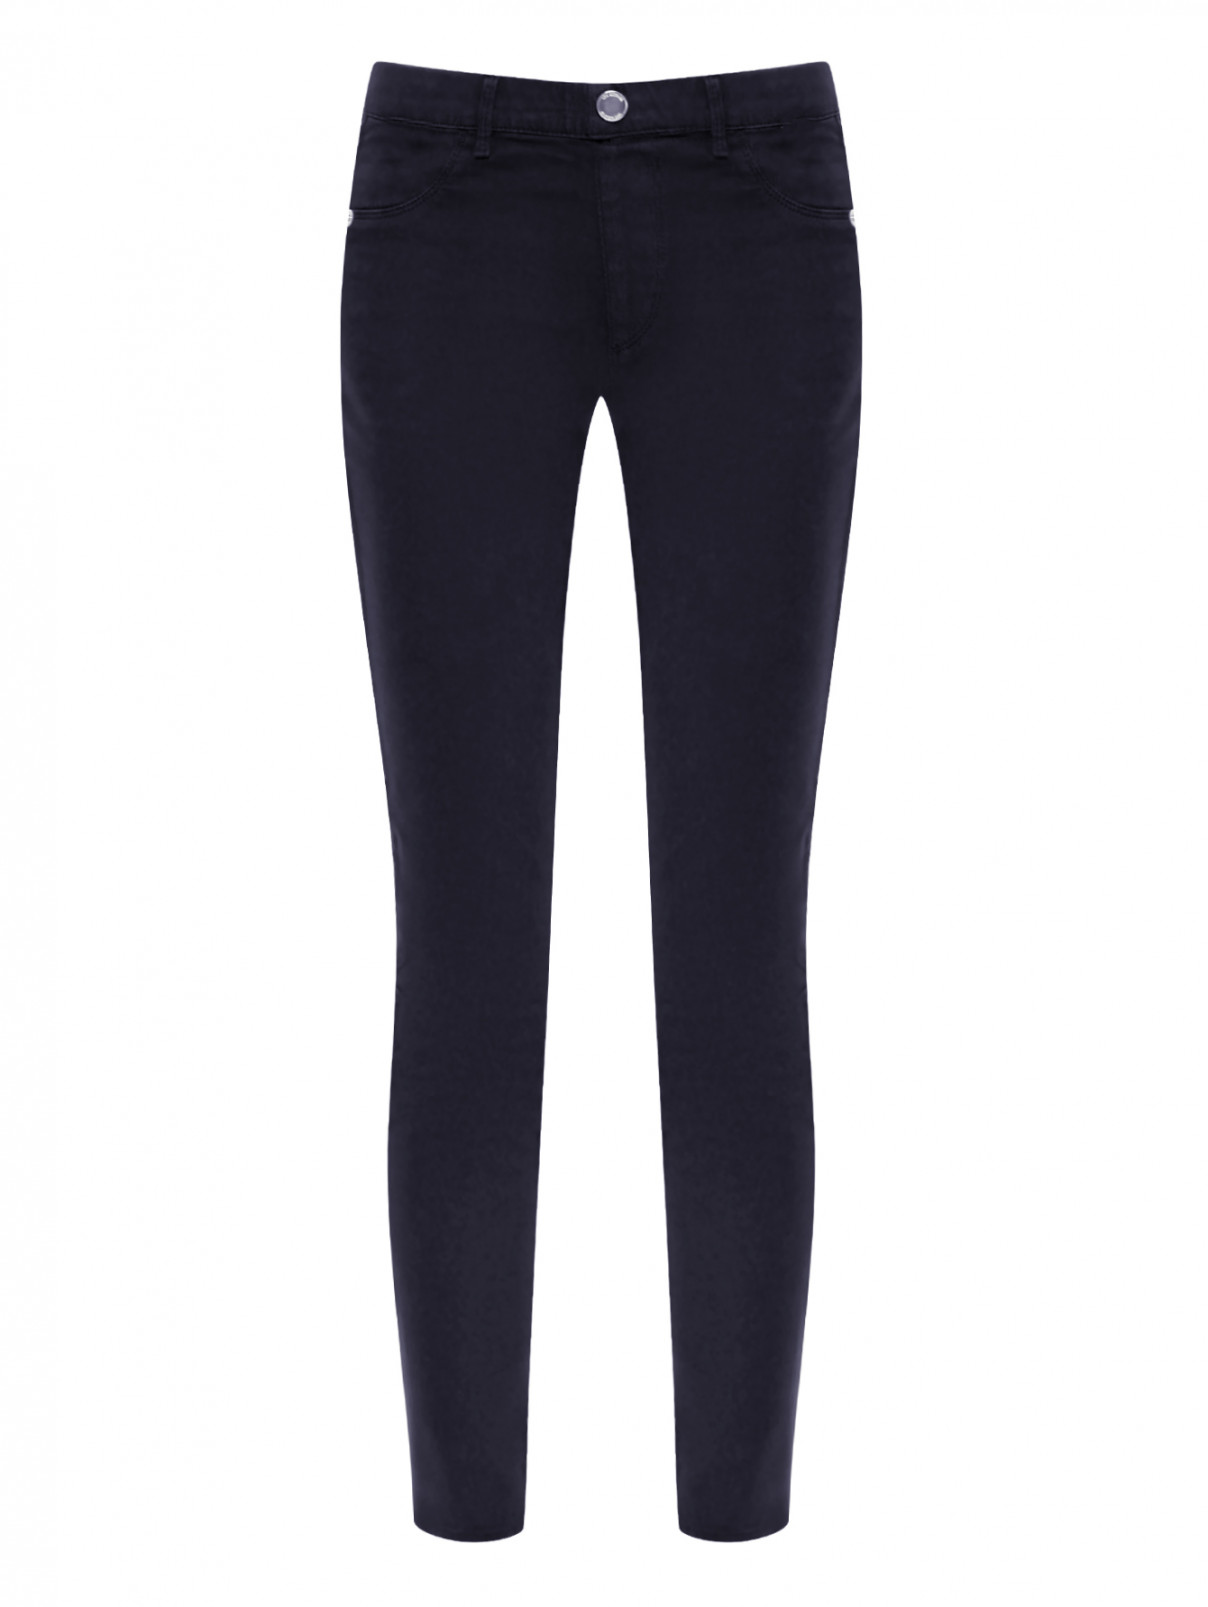 Однотонные брюки из хлопка Love Moschino  –  Общий вид  – Цвет:  Черный